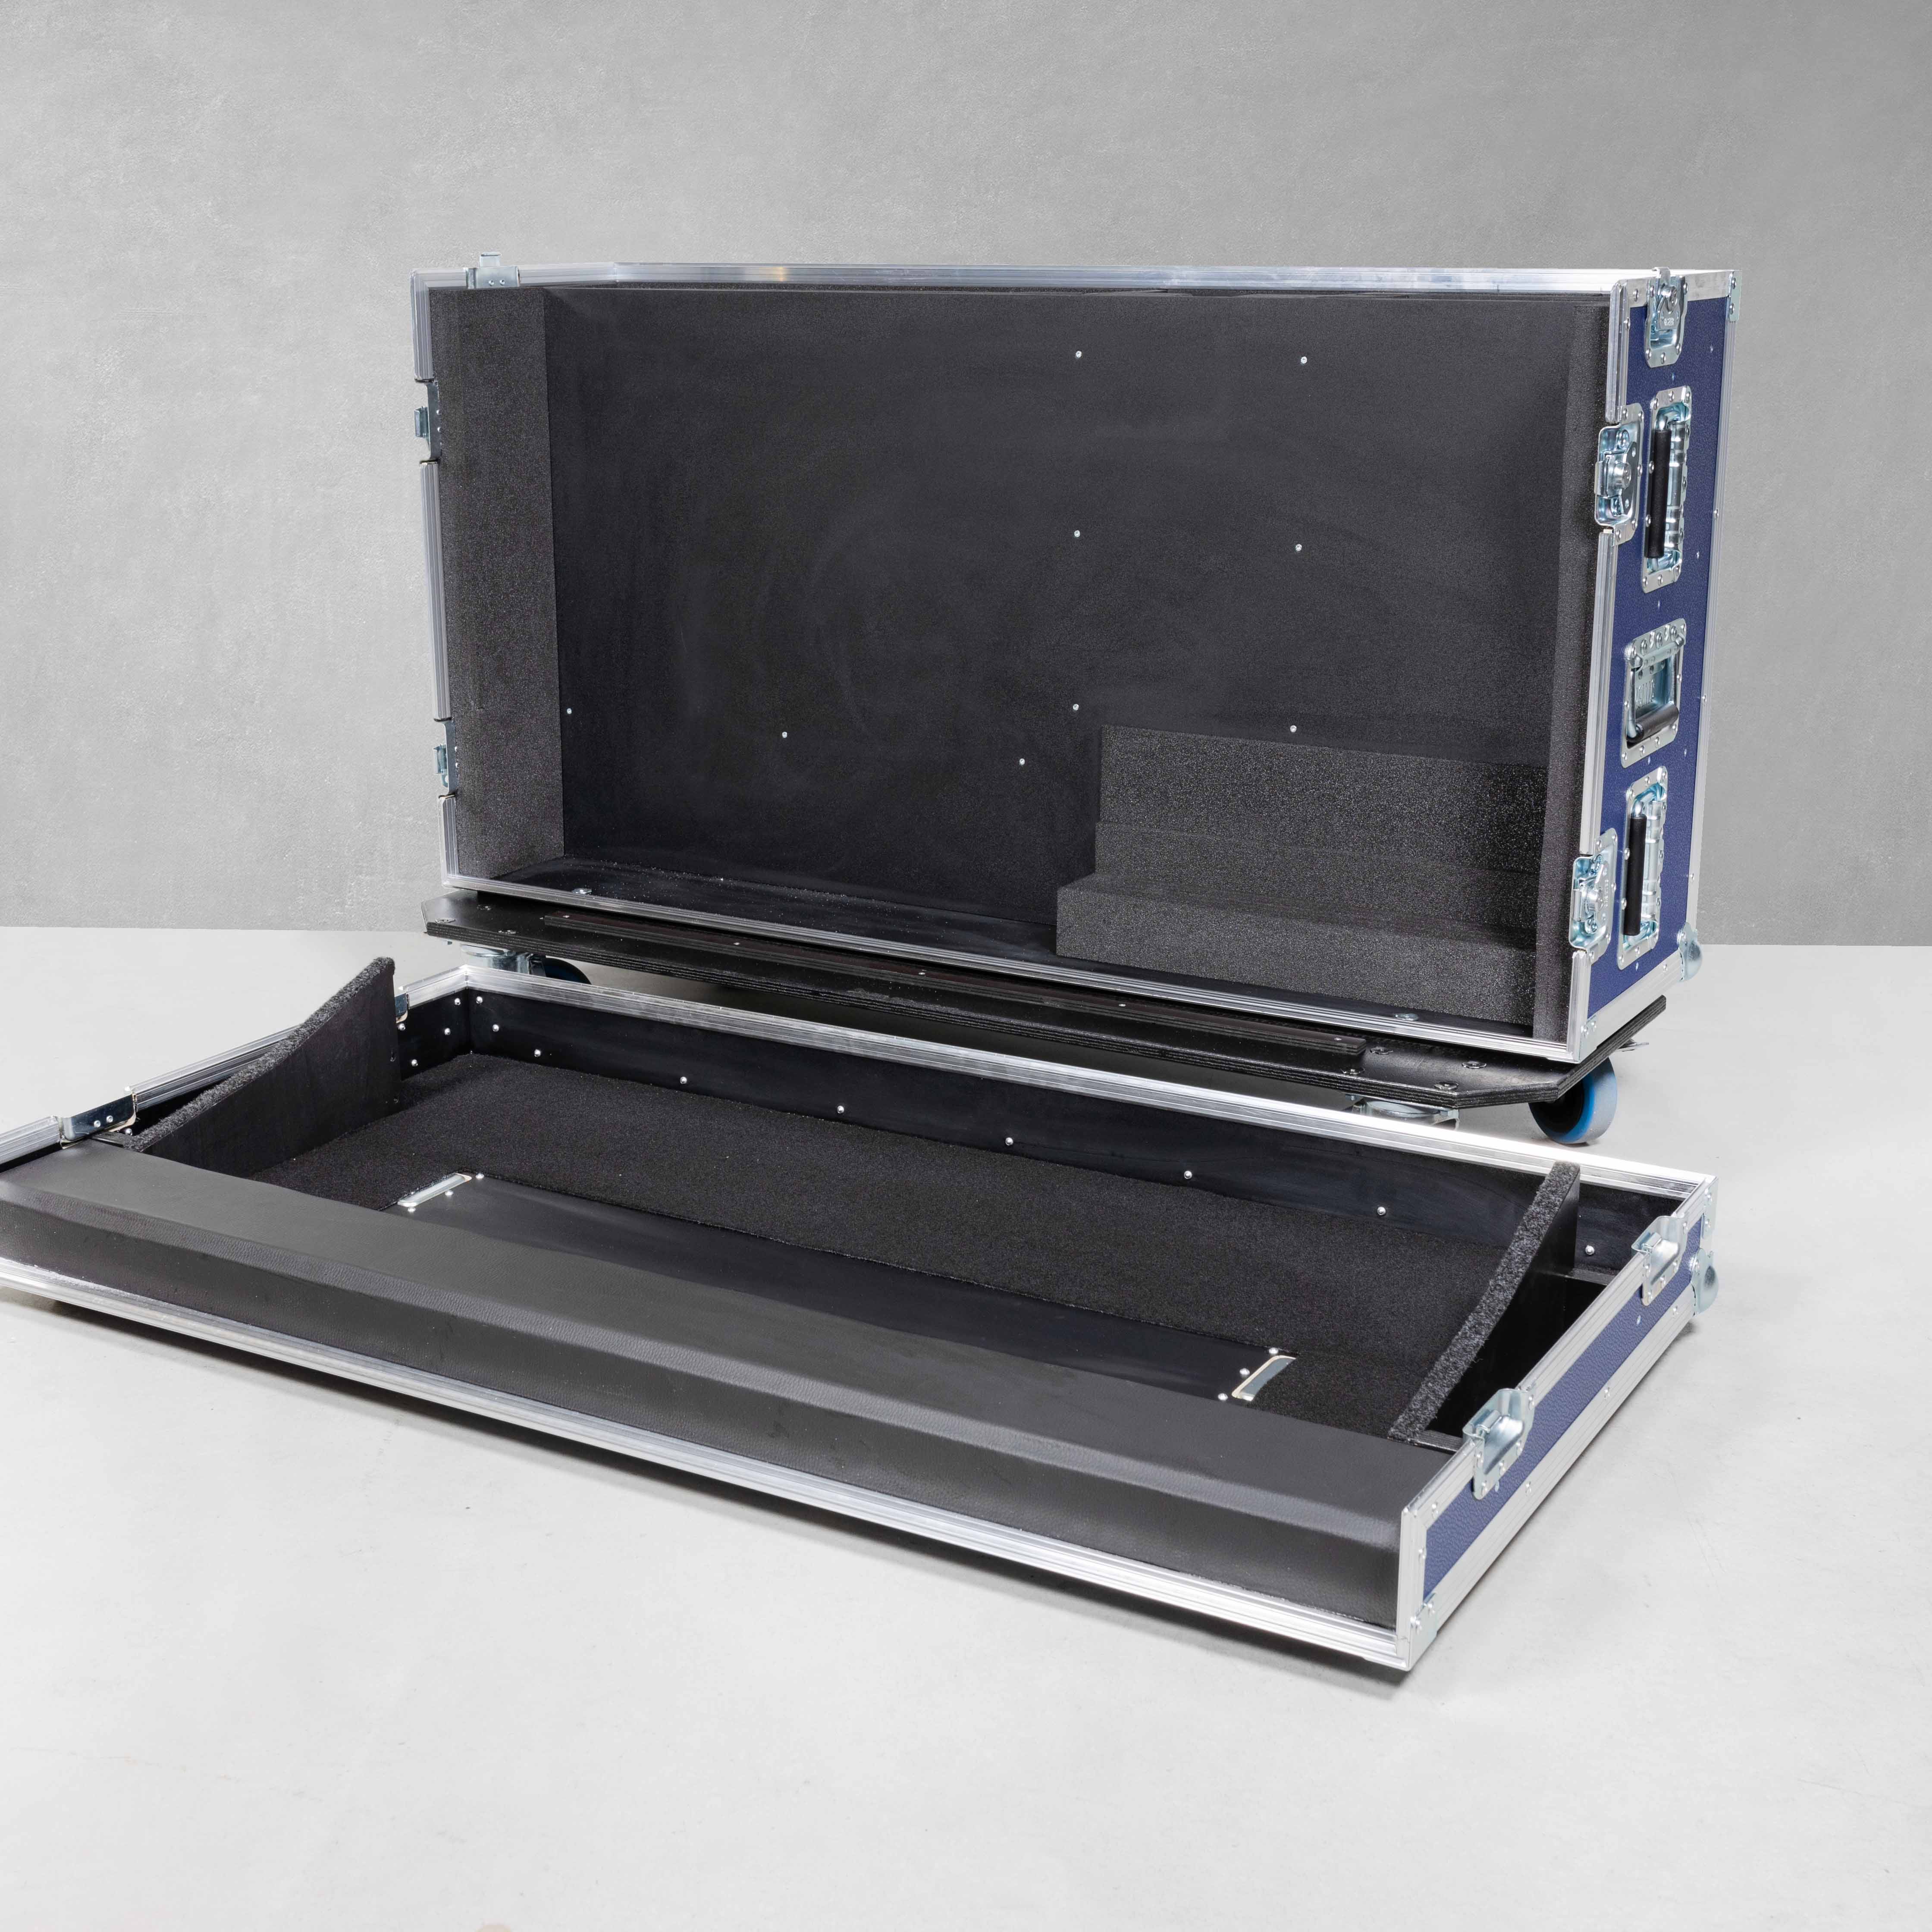 Haubencase für ein Ross Carbonite TouchDrive2S mit Monitor